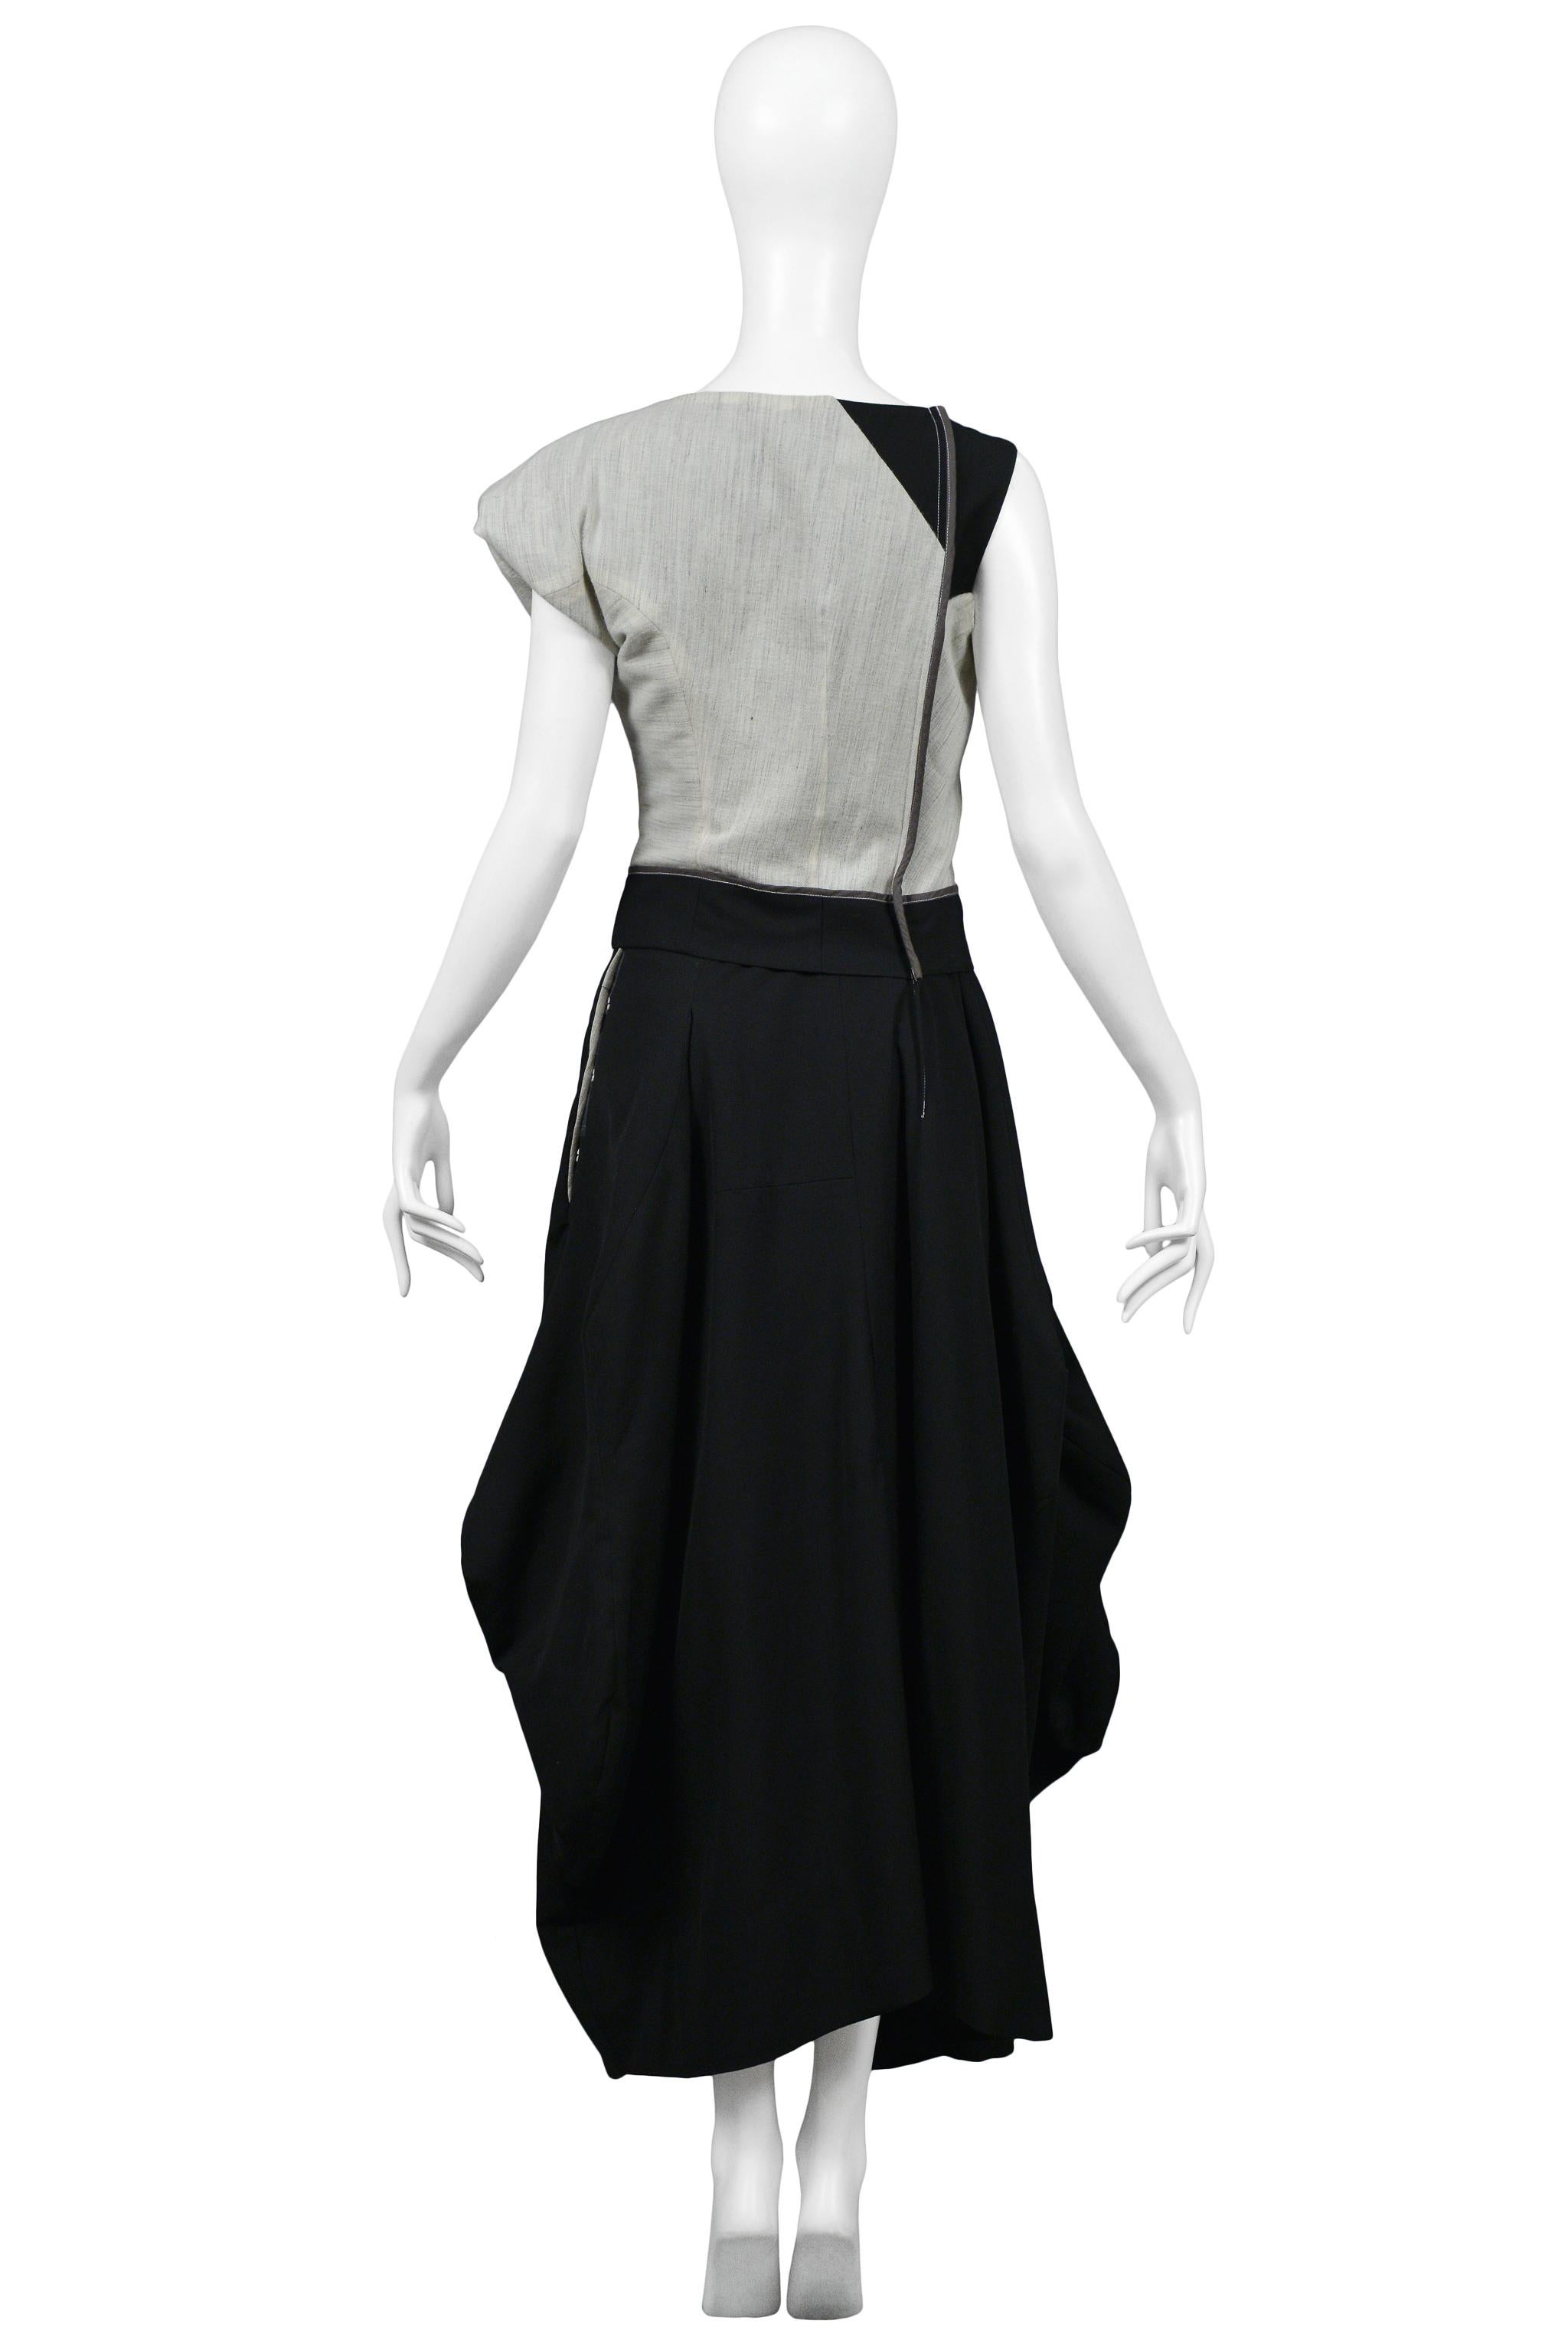 Comme des Garcons Grey & Black Asymmetrical Modernist Gown 1998 1